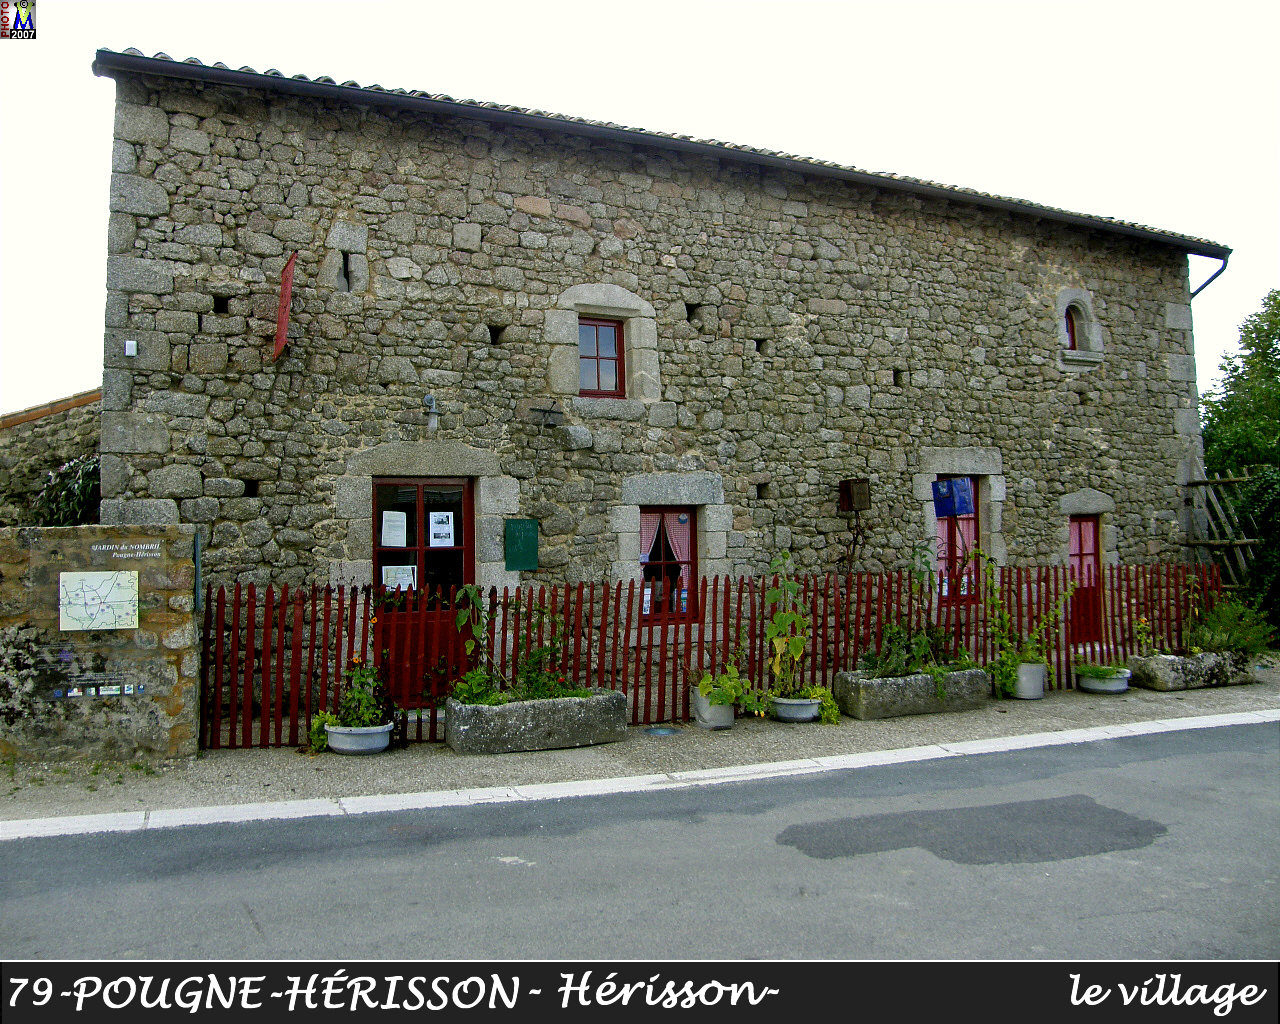 79POUGNE-HERISSON_herisson_village_100.jpg